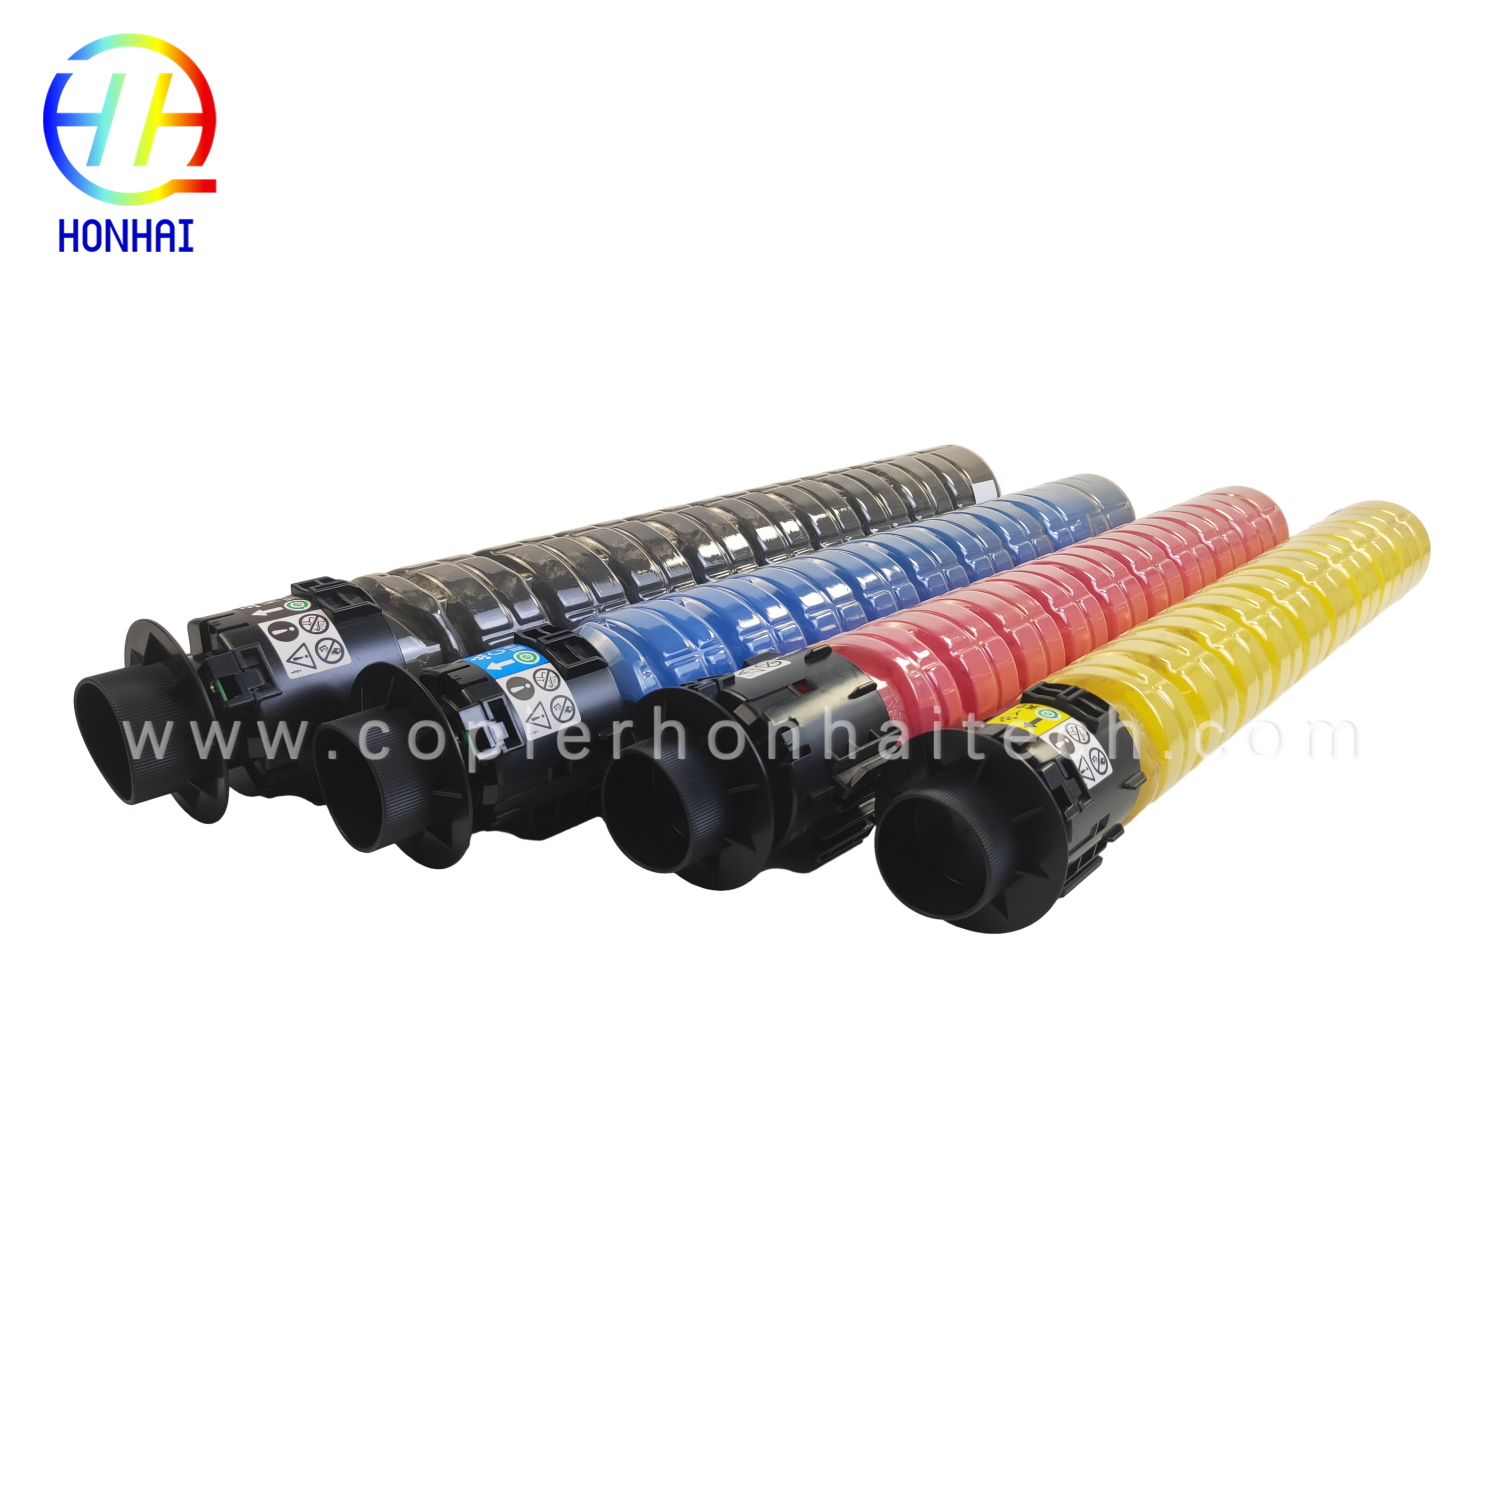 https://www.copierhonhaitech.com/copy-color-toner-cartridge-for-ricoh-aficio-mp-c2000-2500-3000-spc810-811-821-c2500c-product/